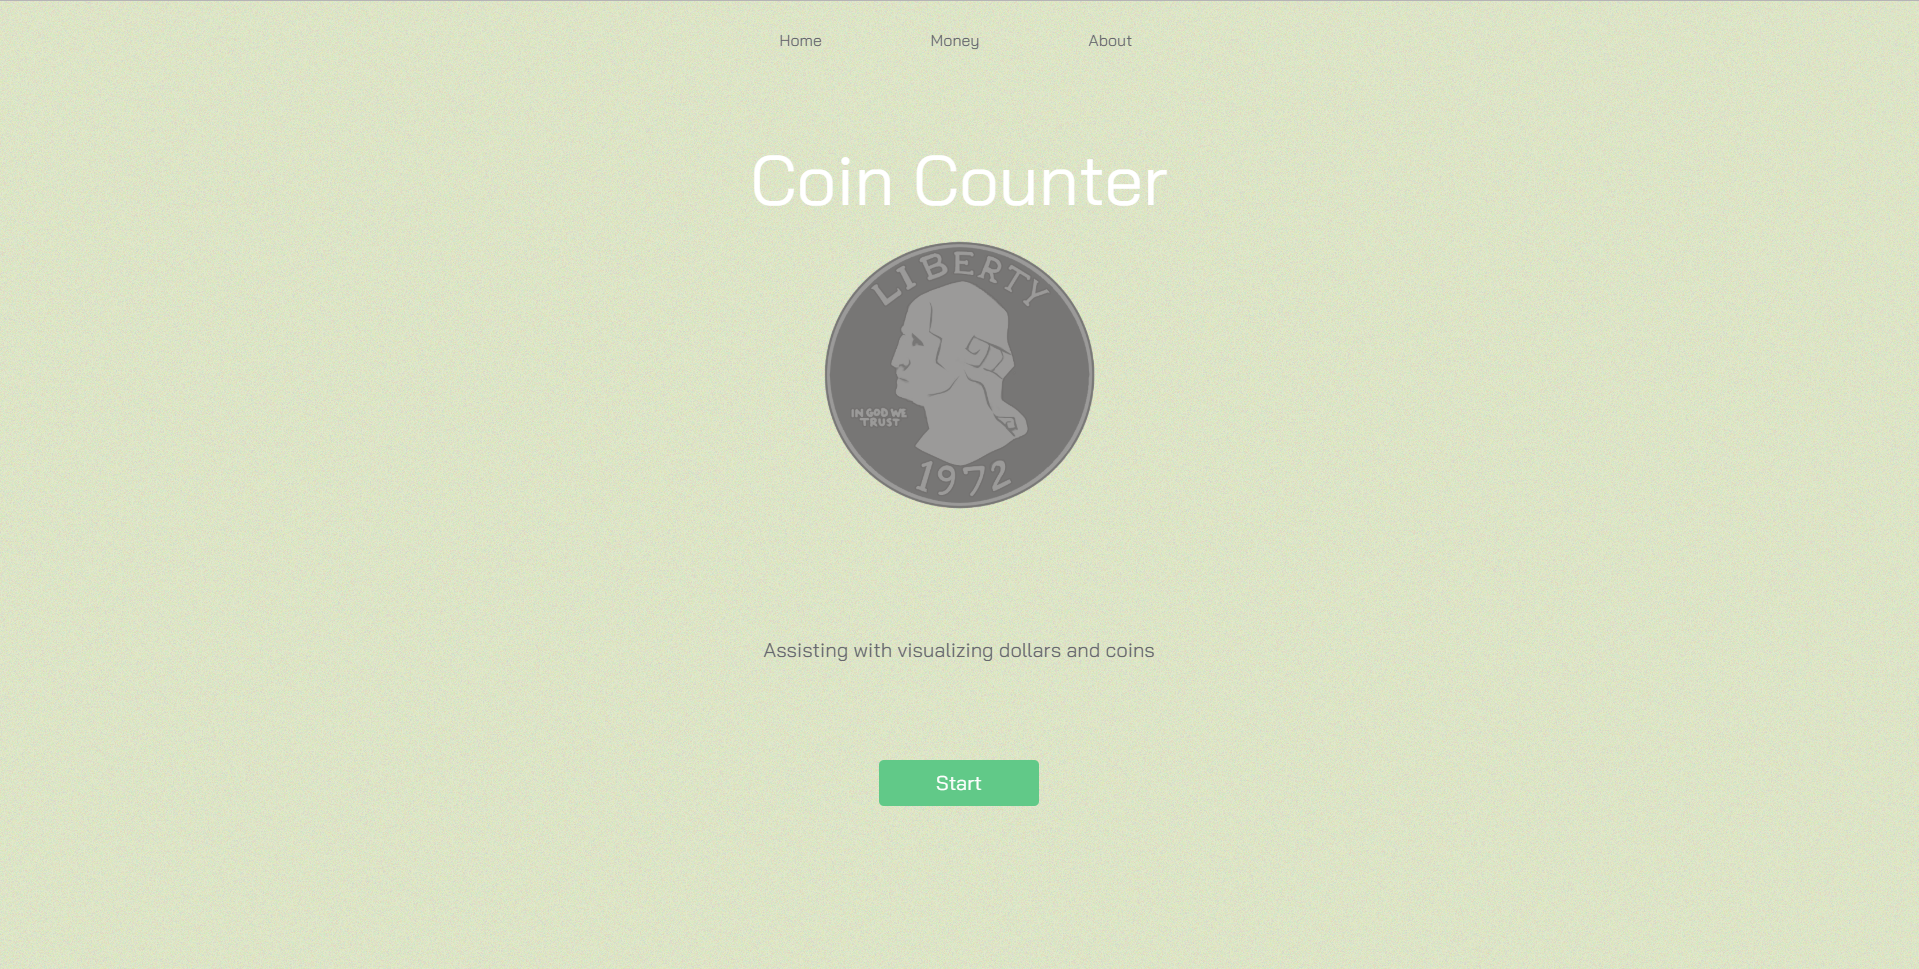 Coin Counter home screen